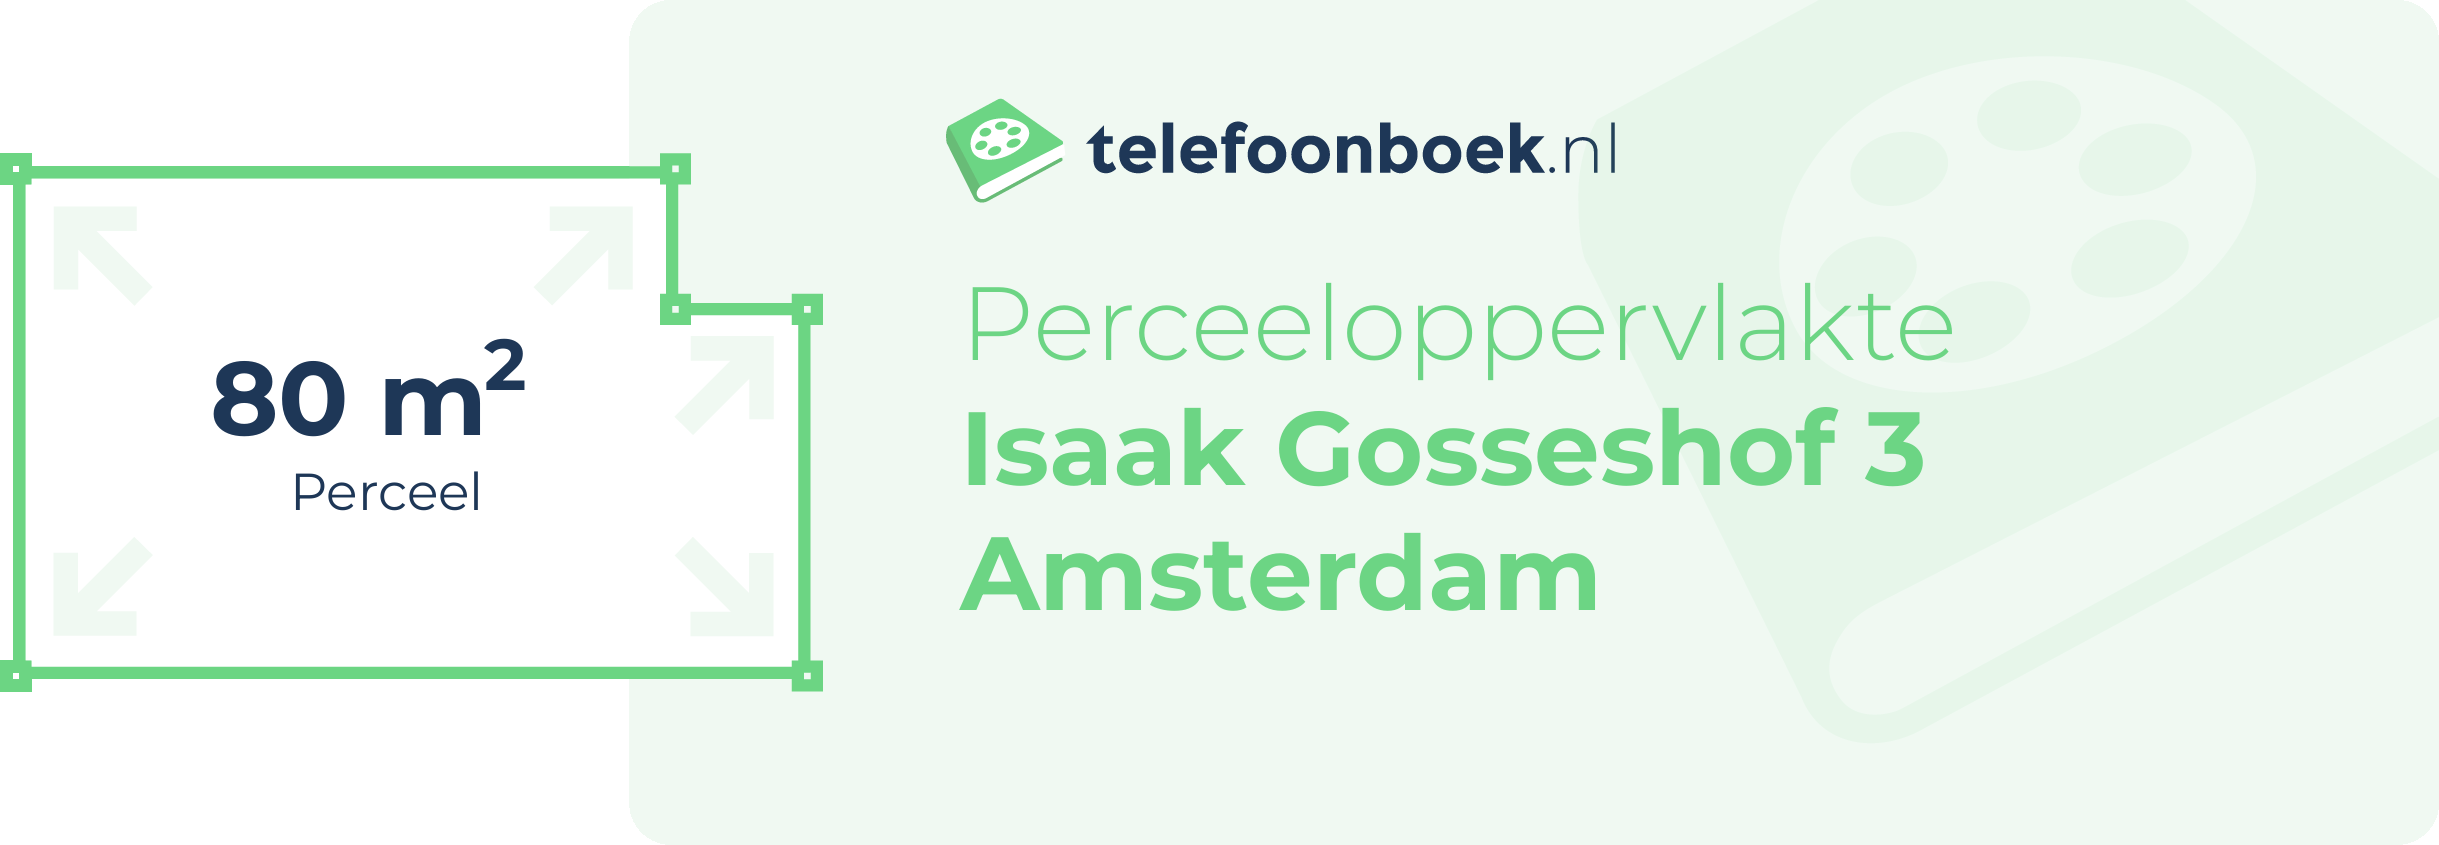 Perceeloppervlakte Isaak Gosseshof 3 Amsterdam